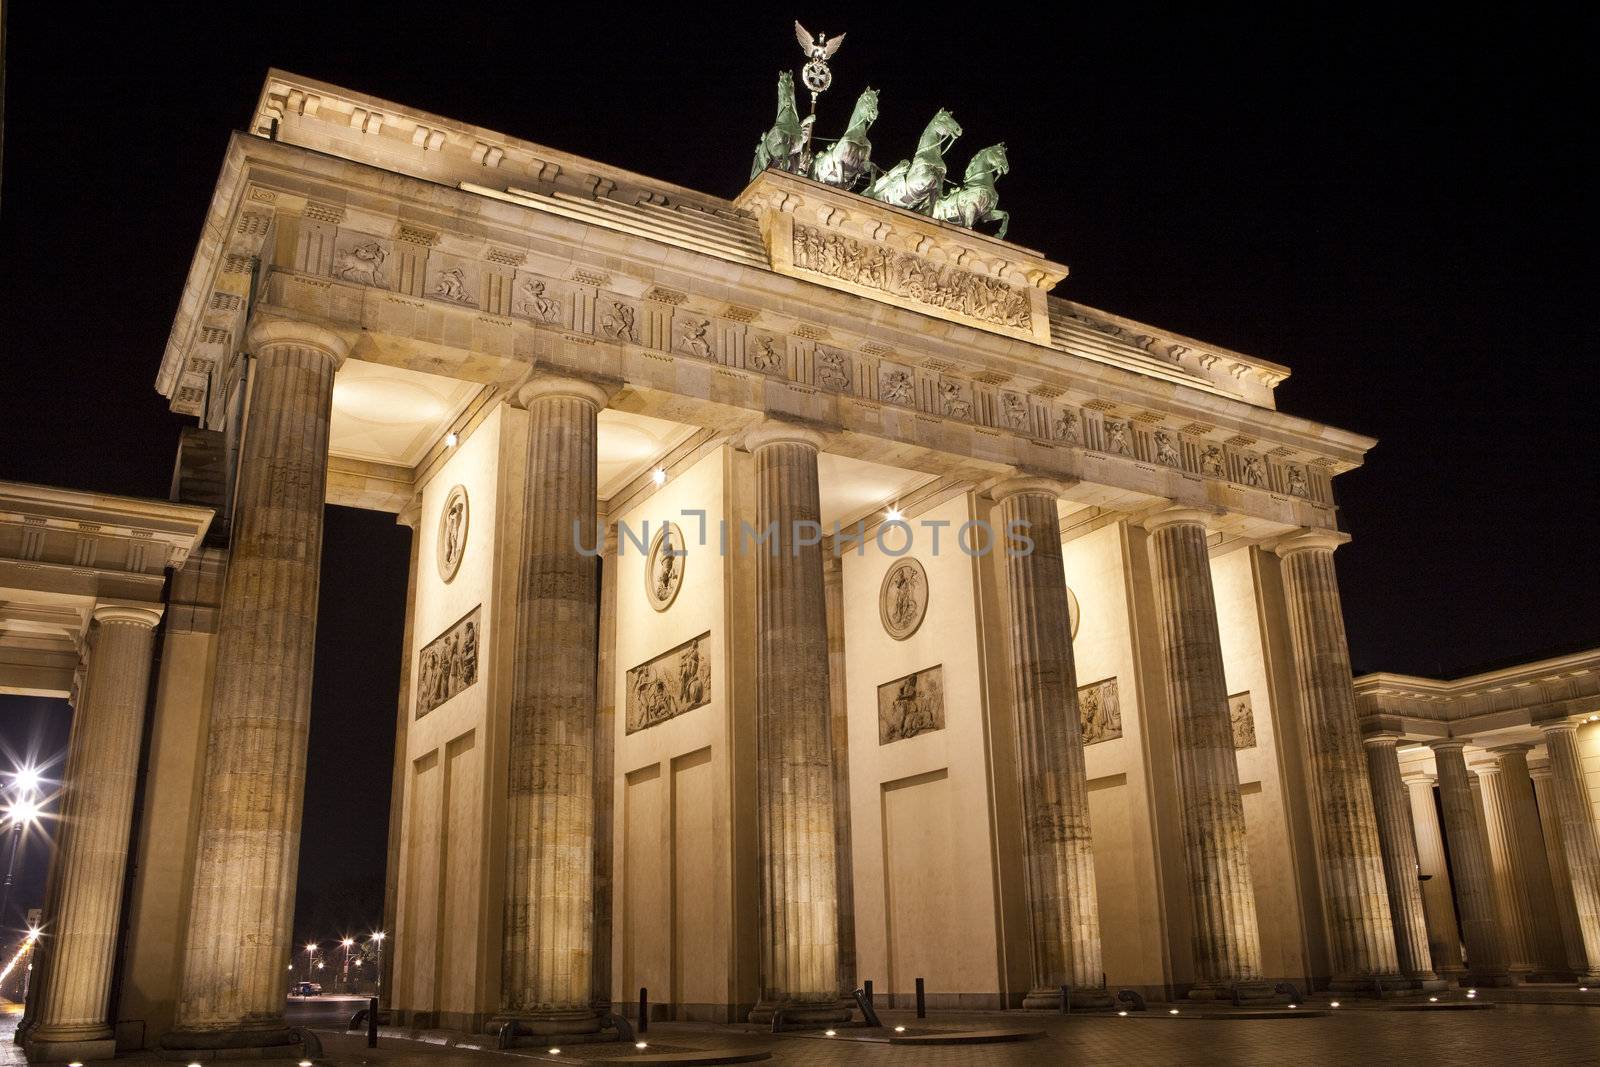 The magnificent Brandenburg Gate in Berlin.